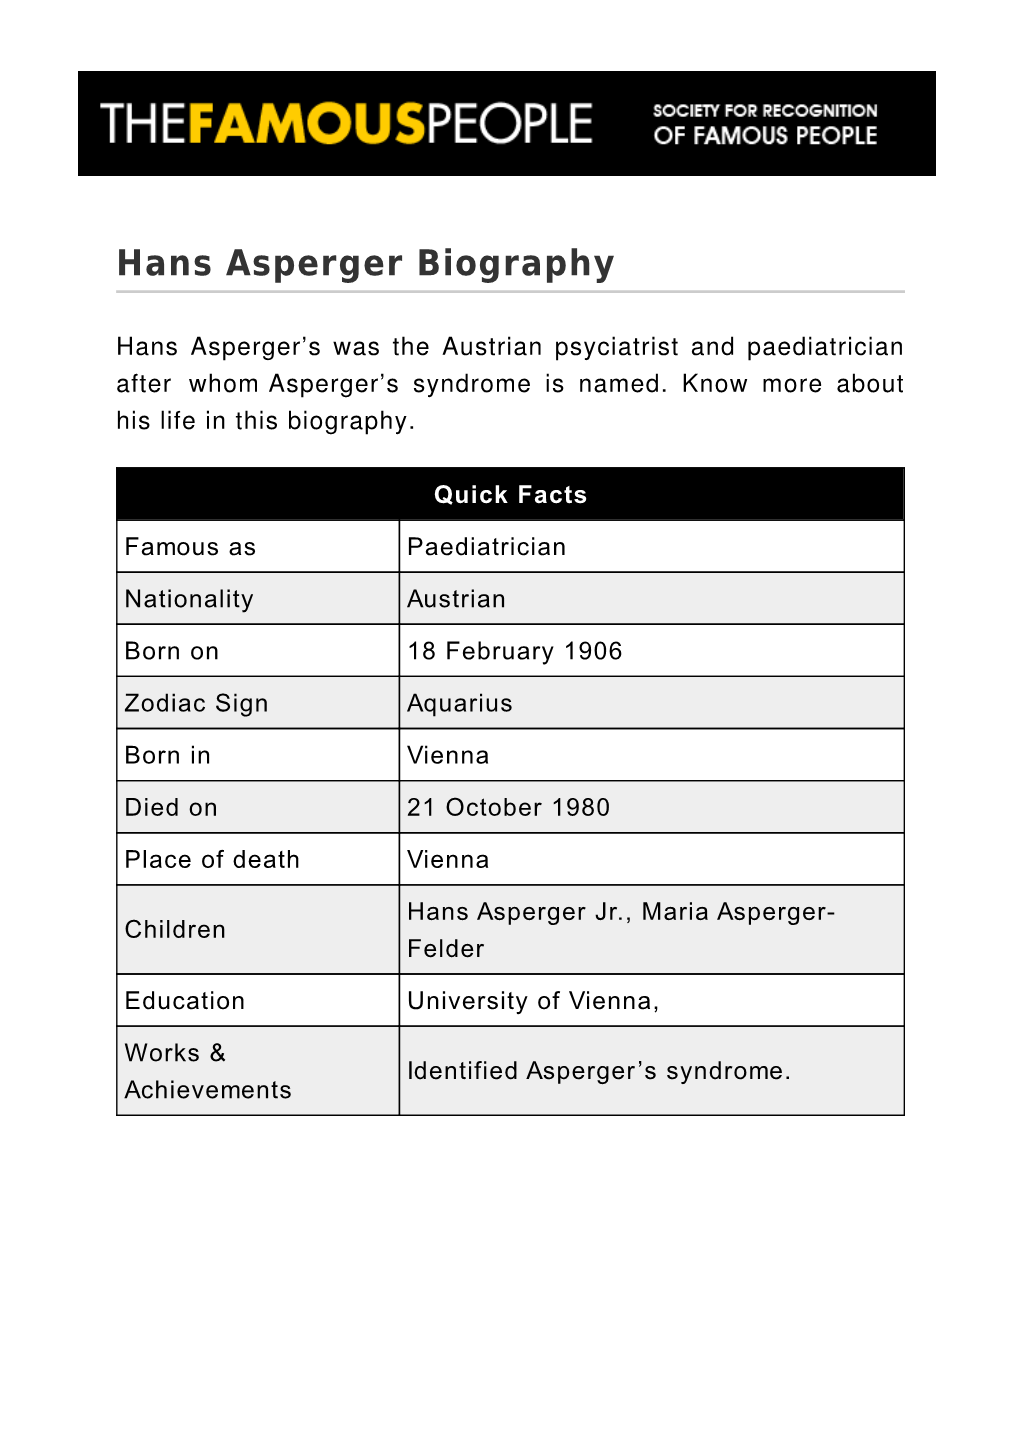 Hans Asperger Biography